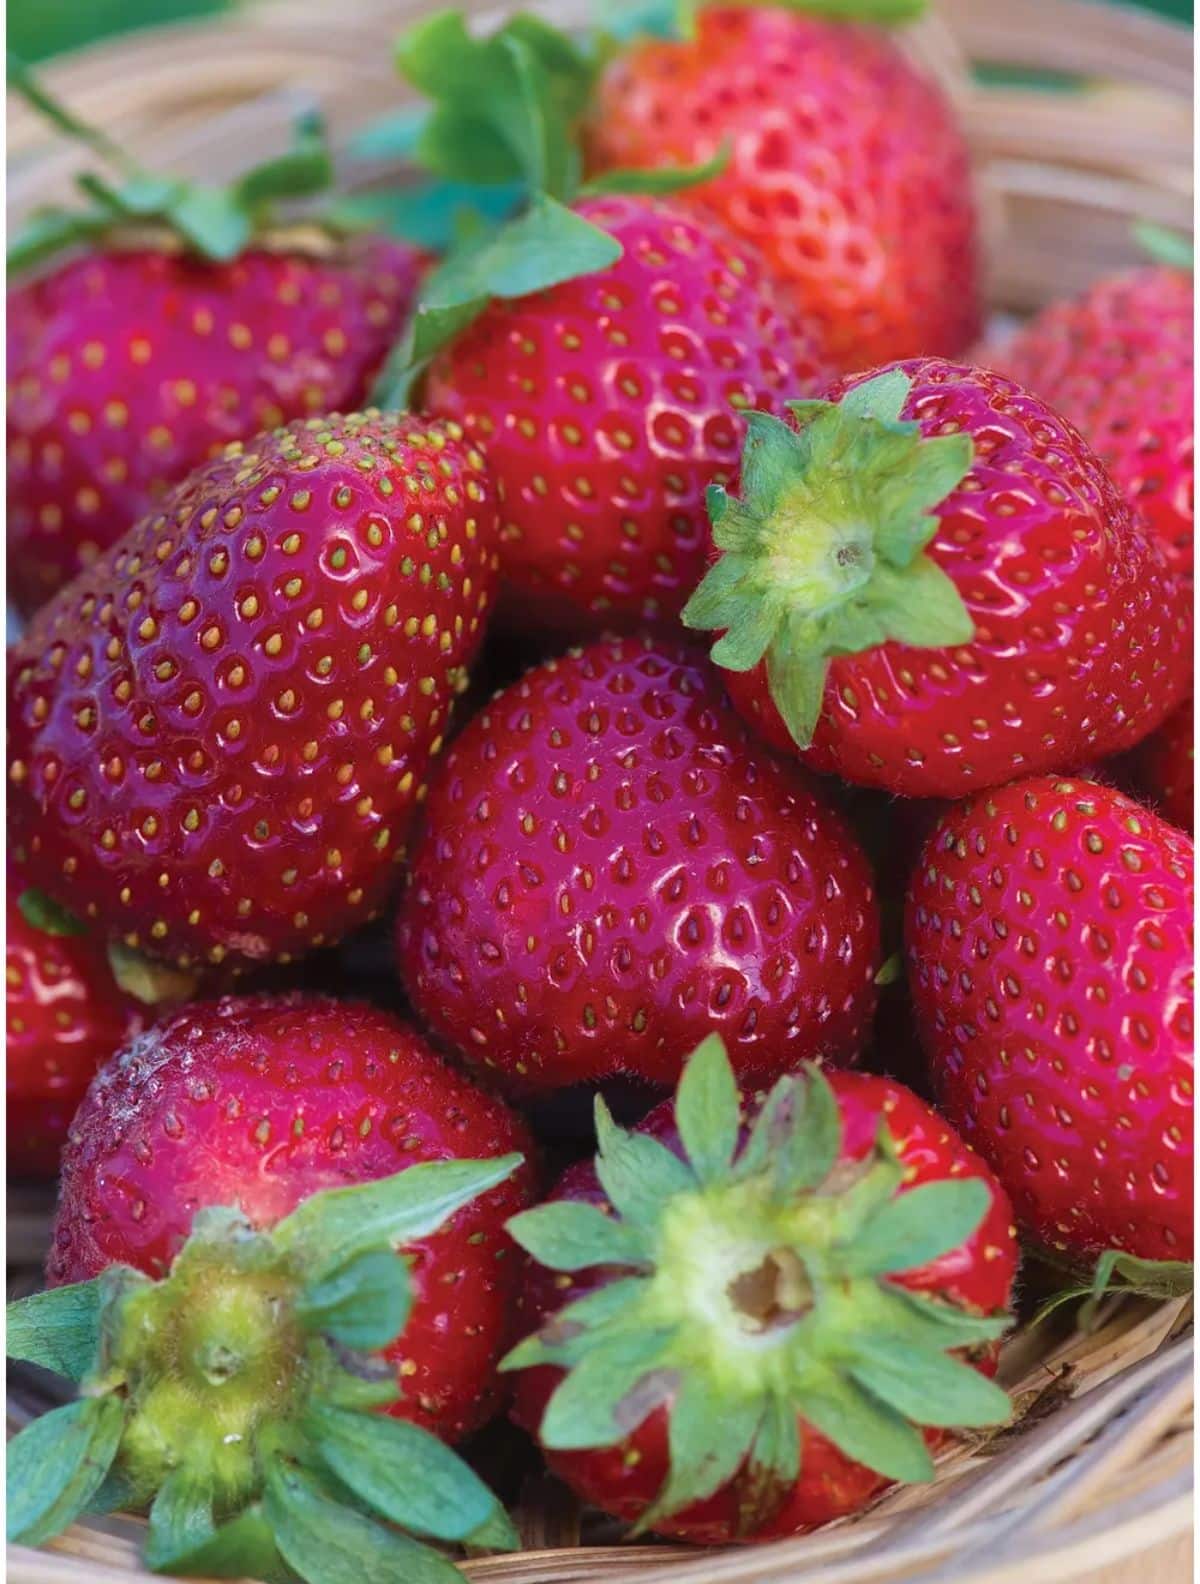 Basket full of ripe elan f1 strawberries.